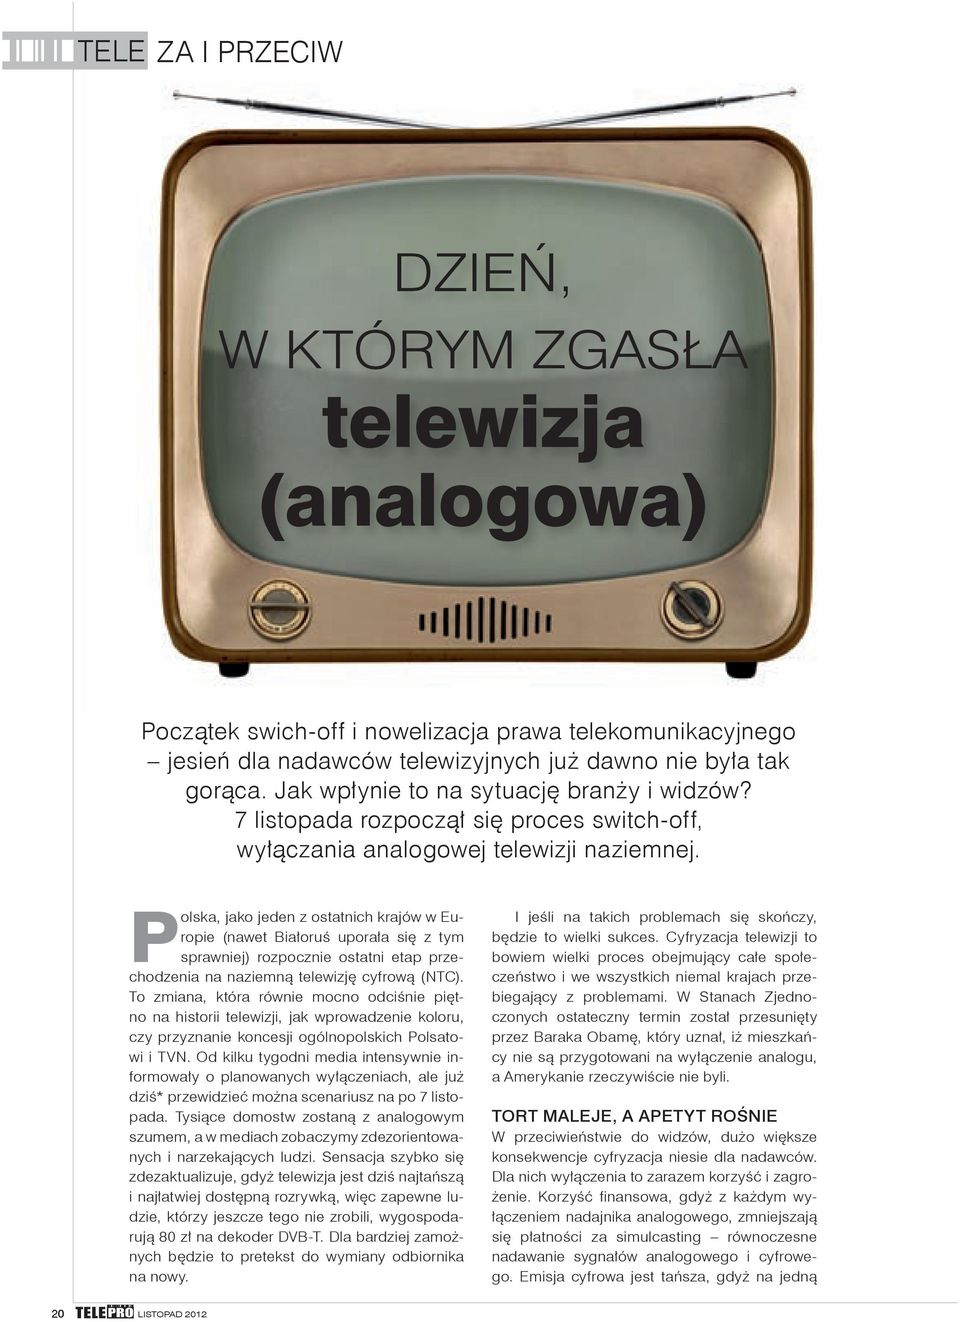 Polska, jako jeden z ostatnich krajów w Europie (nawet Białoruś uporała się z tym sprawniej) rozpocznie ostatni etap przechodzenia na naziemną telewizję cyfrową (NTC).